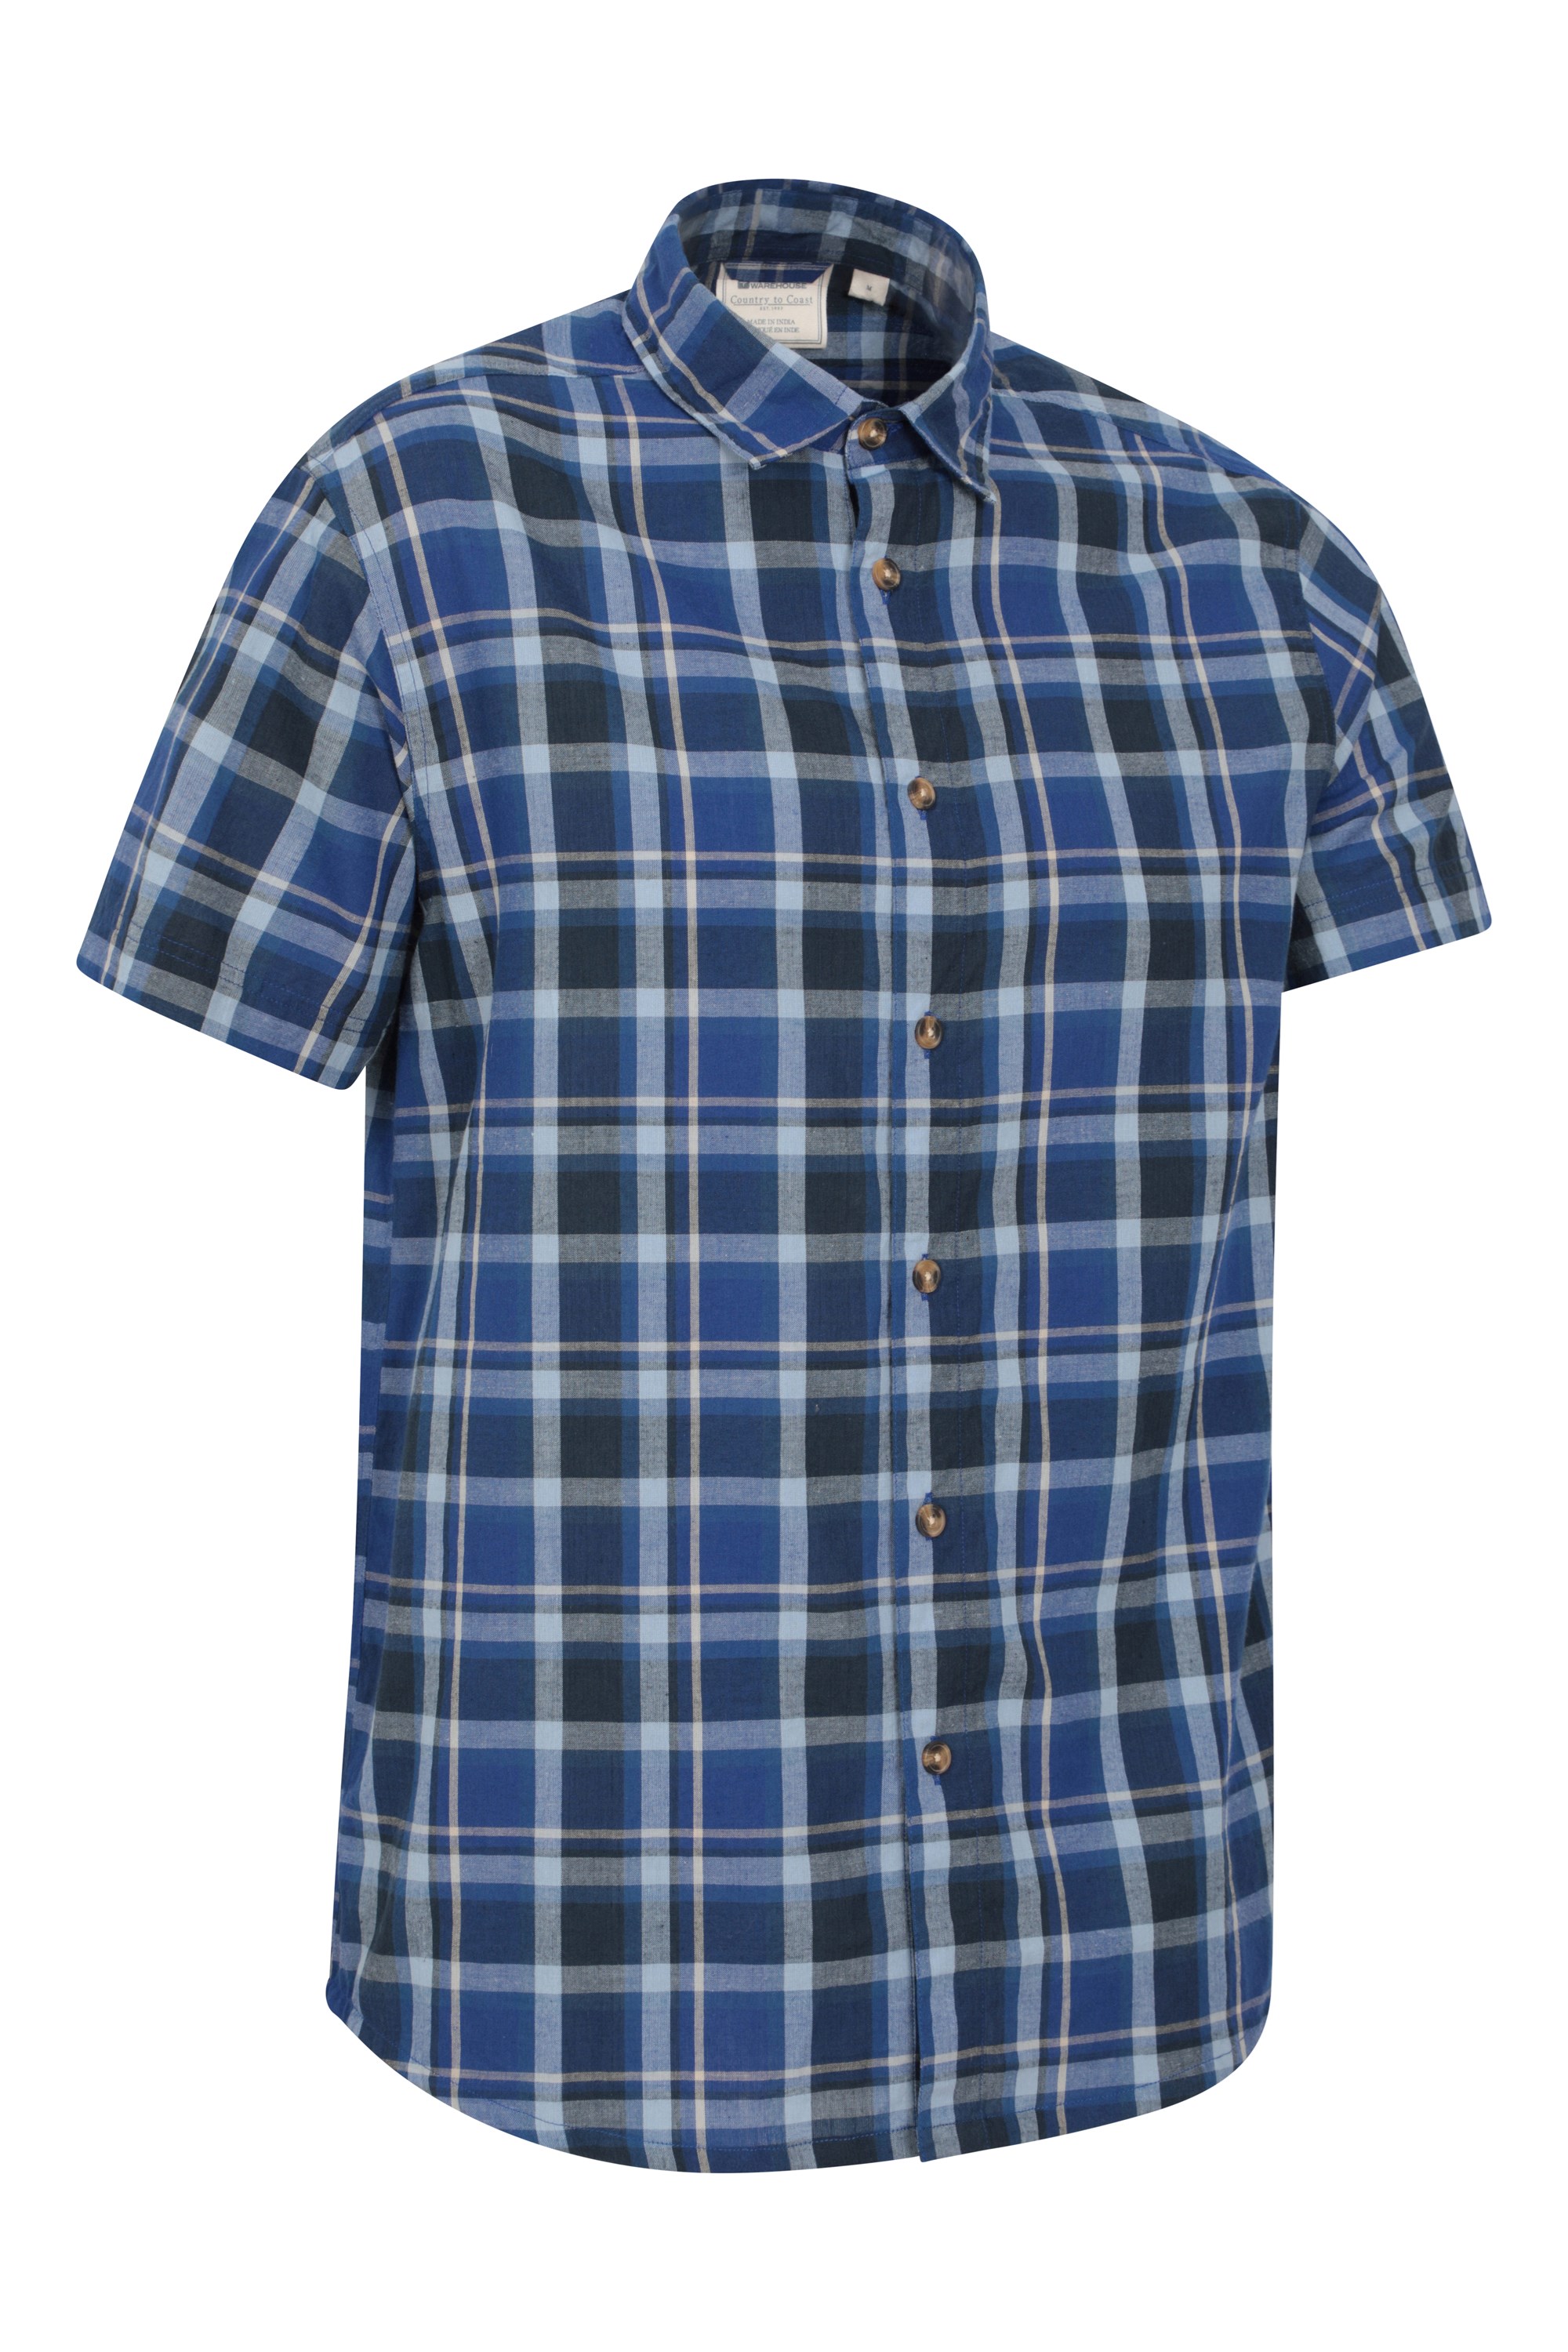 Mountain Warehouse Weekender Mens Shirt - Blue | Size 3XL